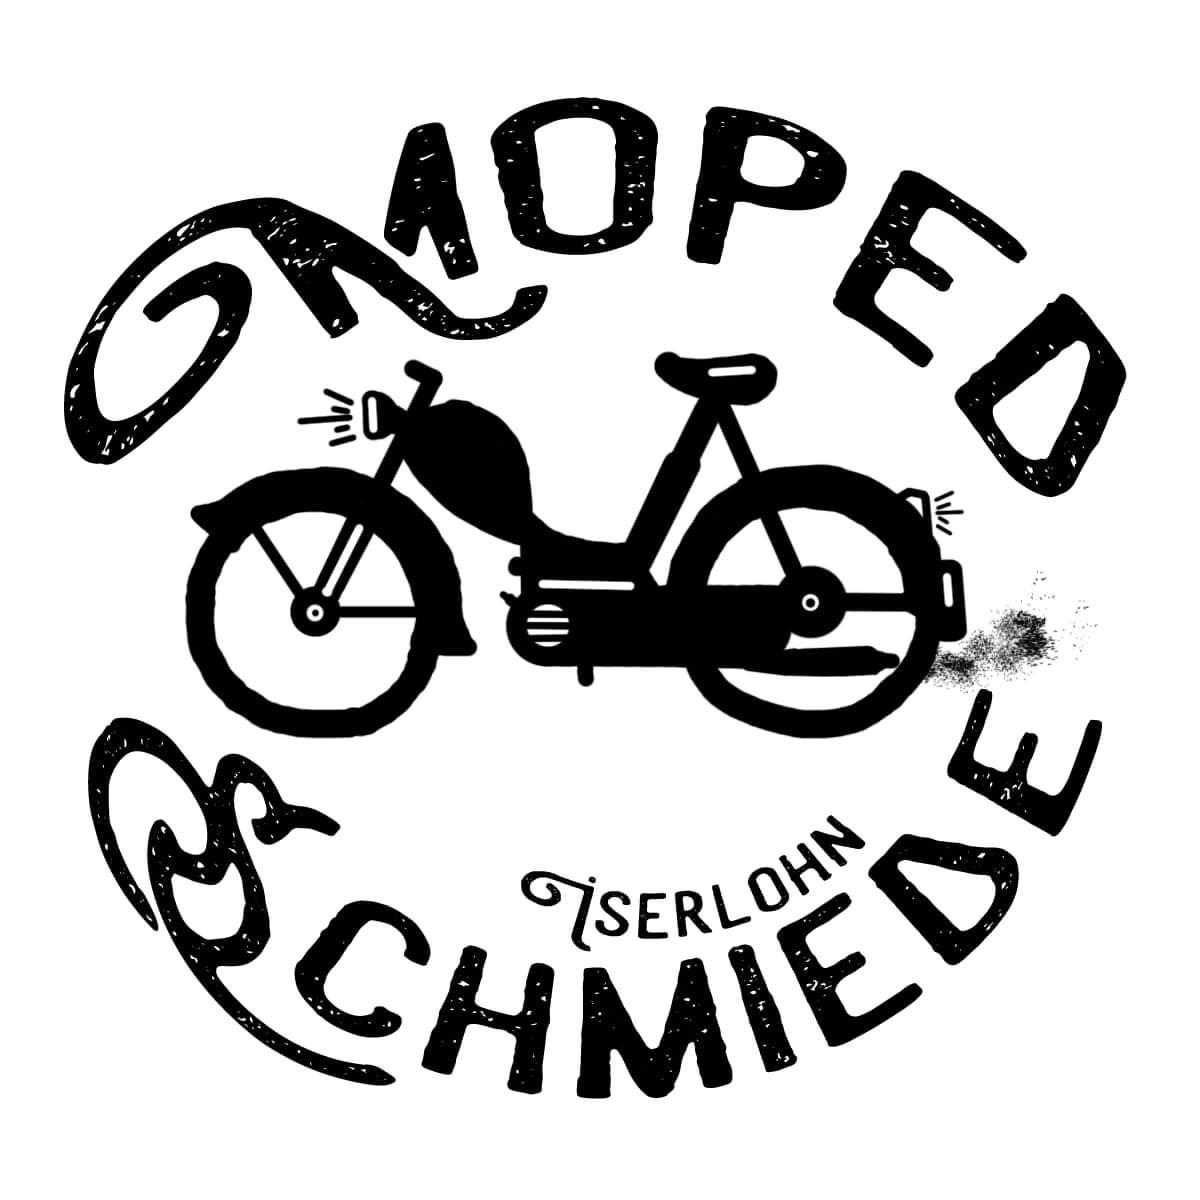 Mopedschmiede Iserlohn - Ihr kompetenter Partner rund ums Thema Mofa und Moped.